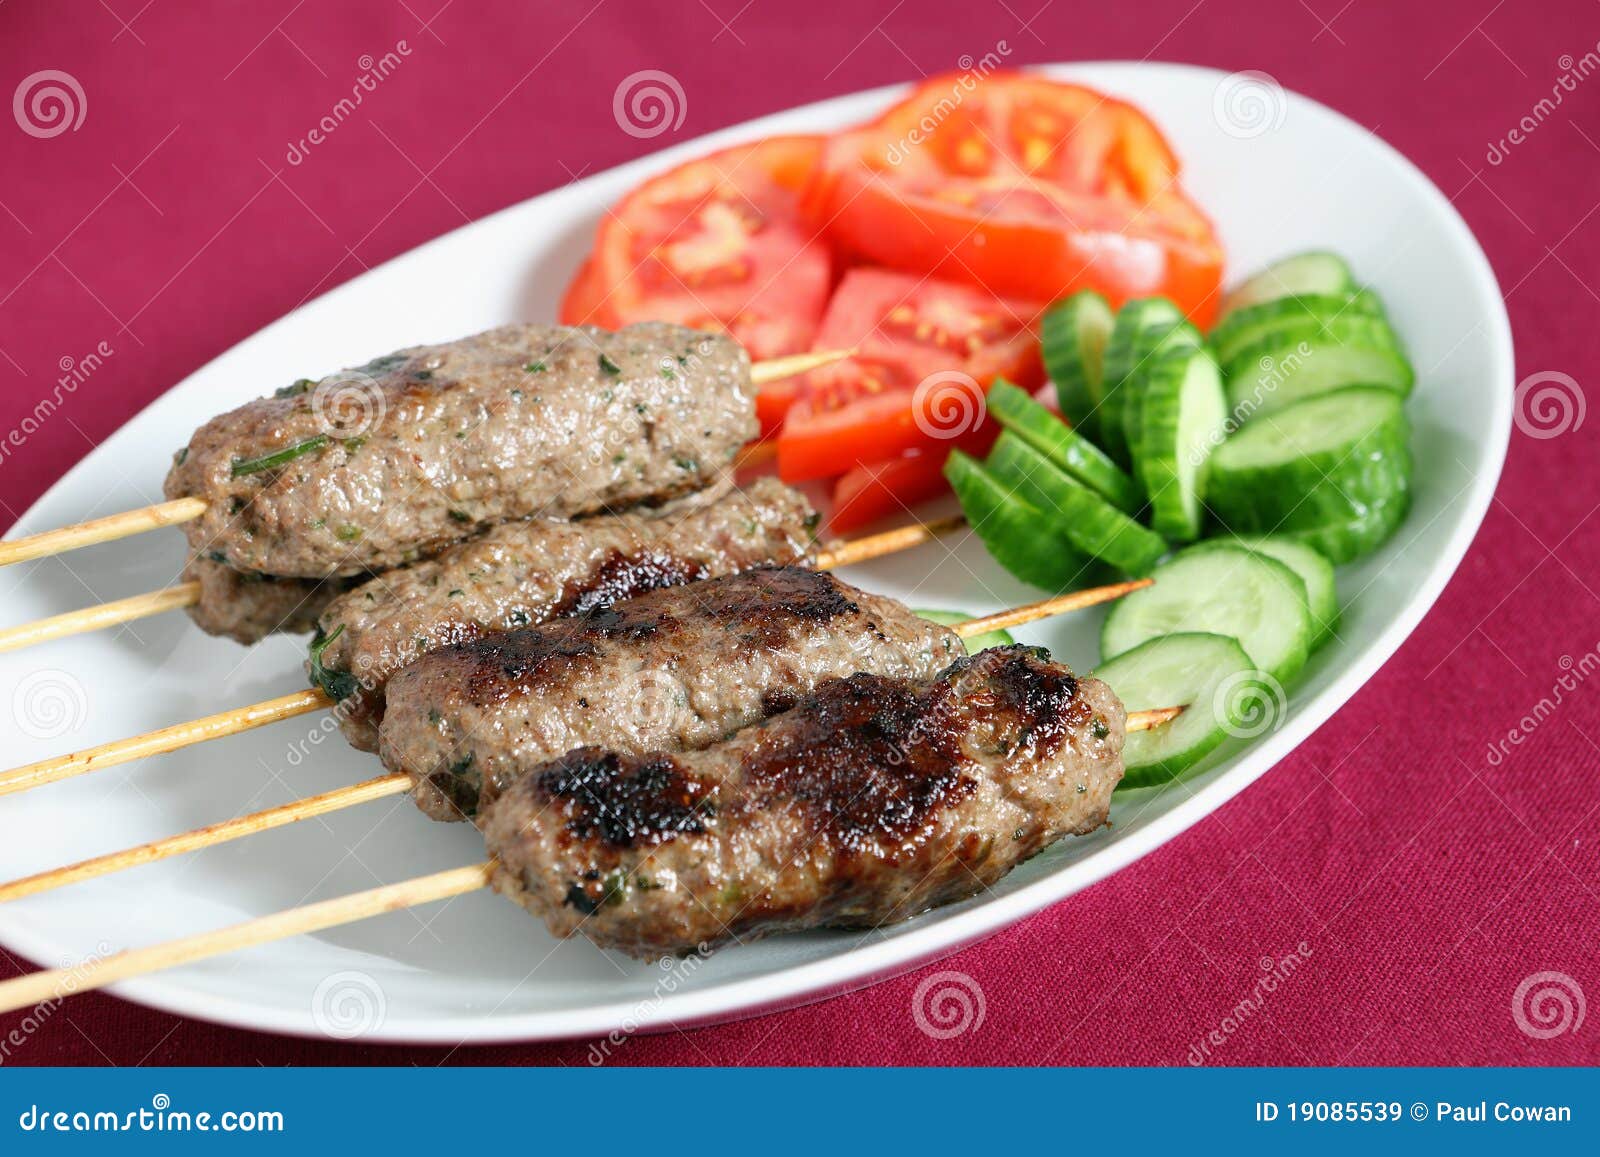 arab lamb kofta on a plate